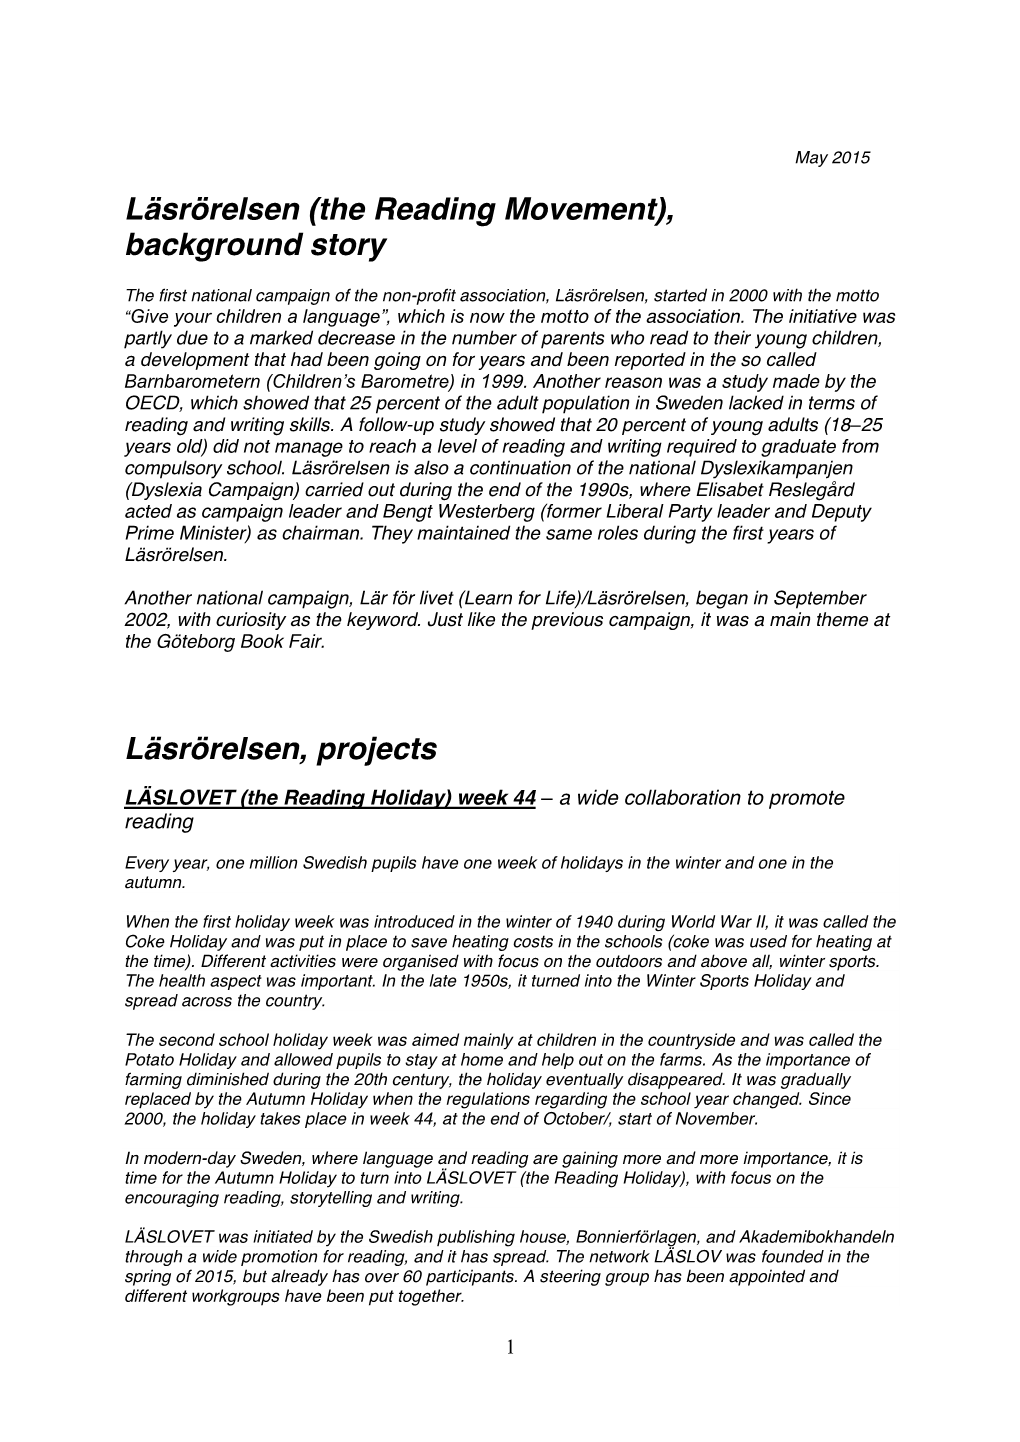 Läsrörelsen (The Reading Movement), Background Story Läsrörelsen, Projects